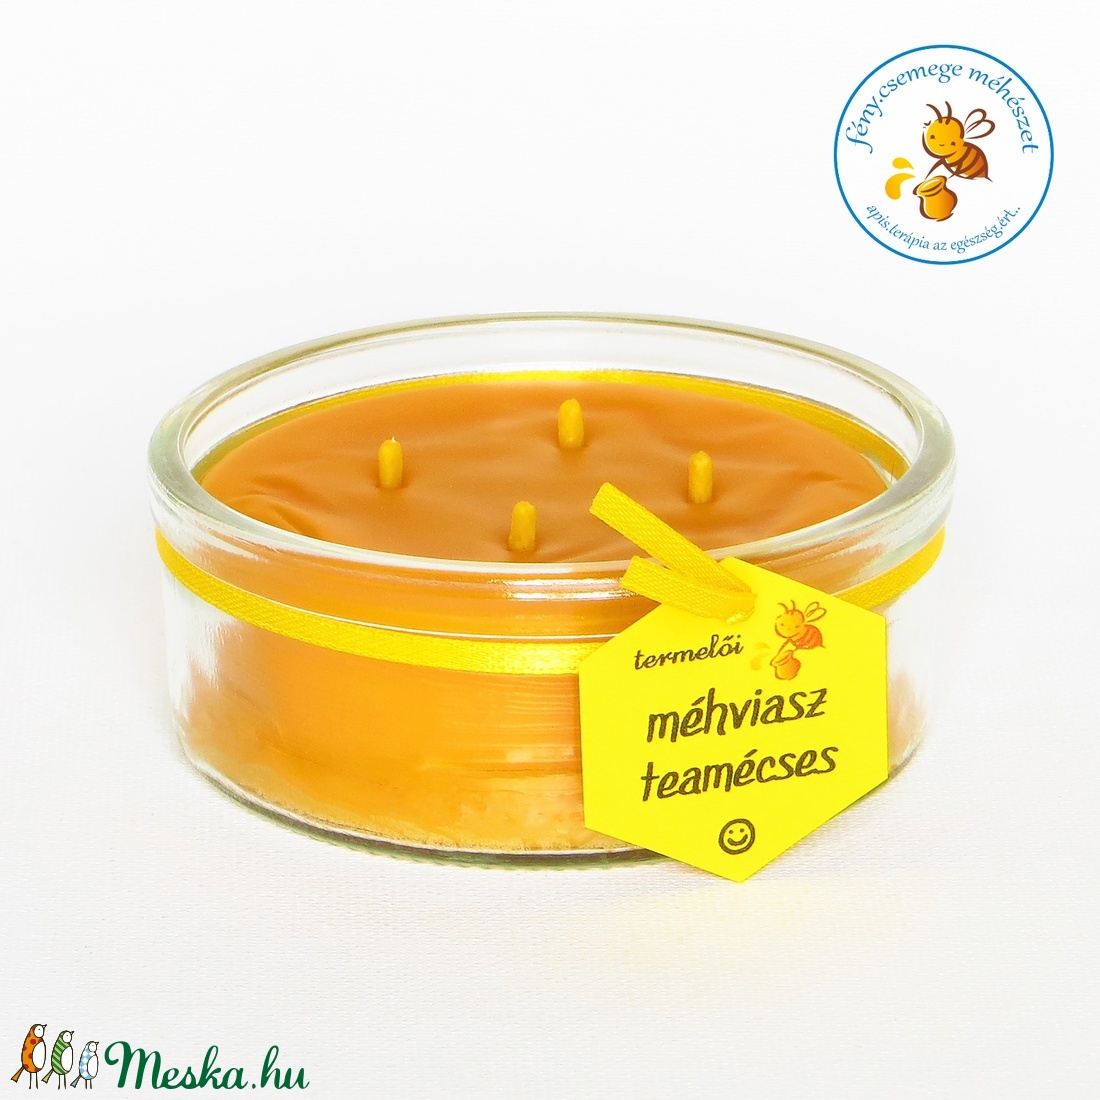 termelői méhviasz négy kanócos mécses  kör formájú üvegben -  - Meska.hu